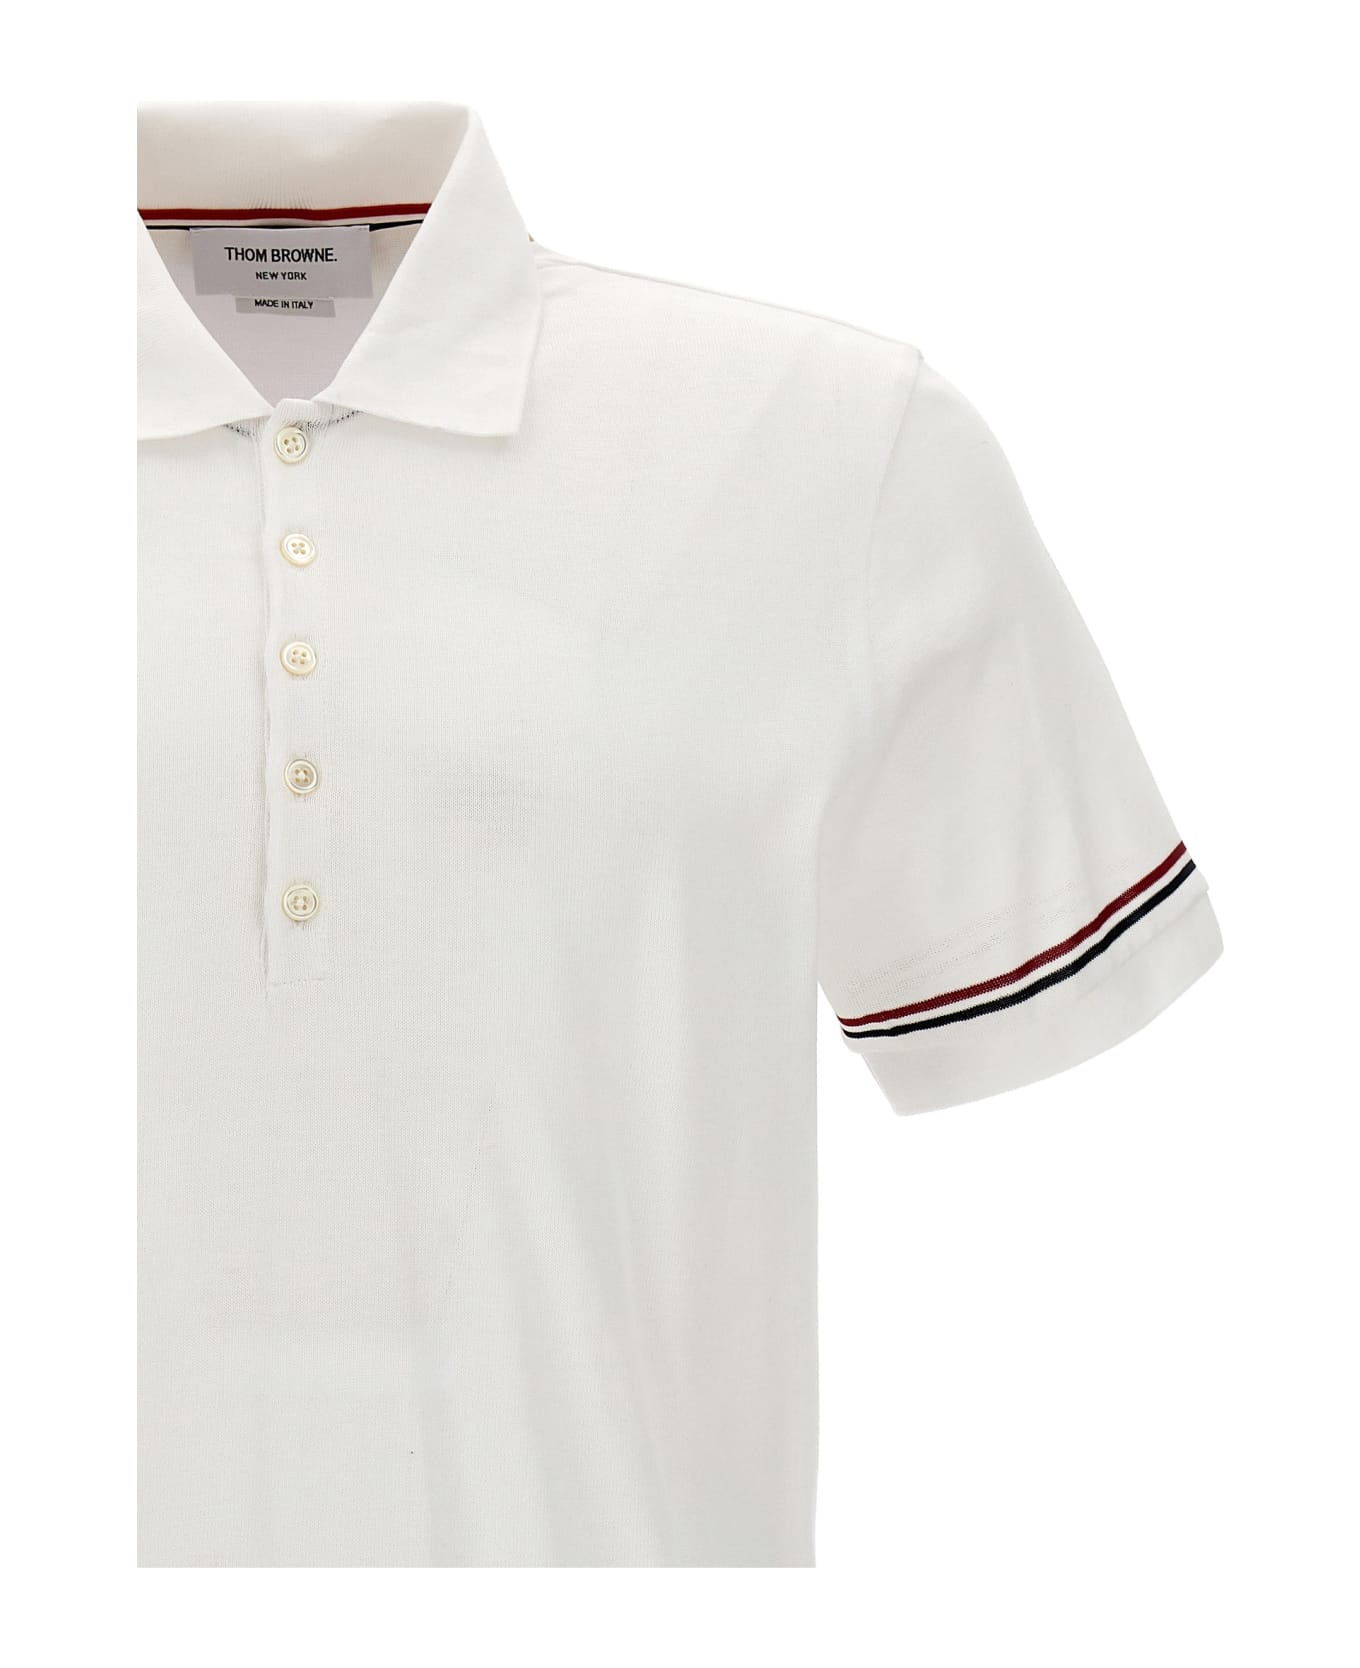 Thom Browne 'rwb' Polo Shirt - White